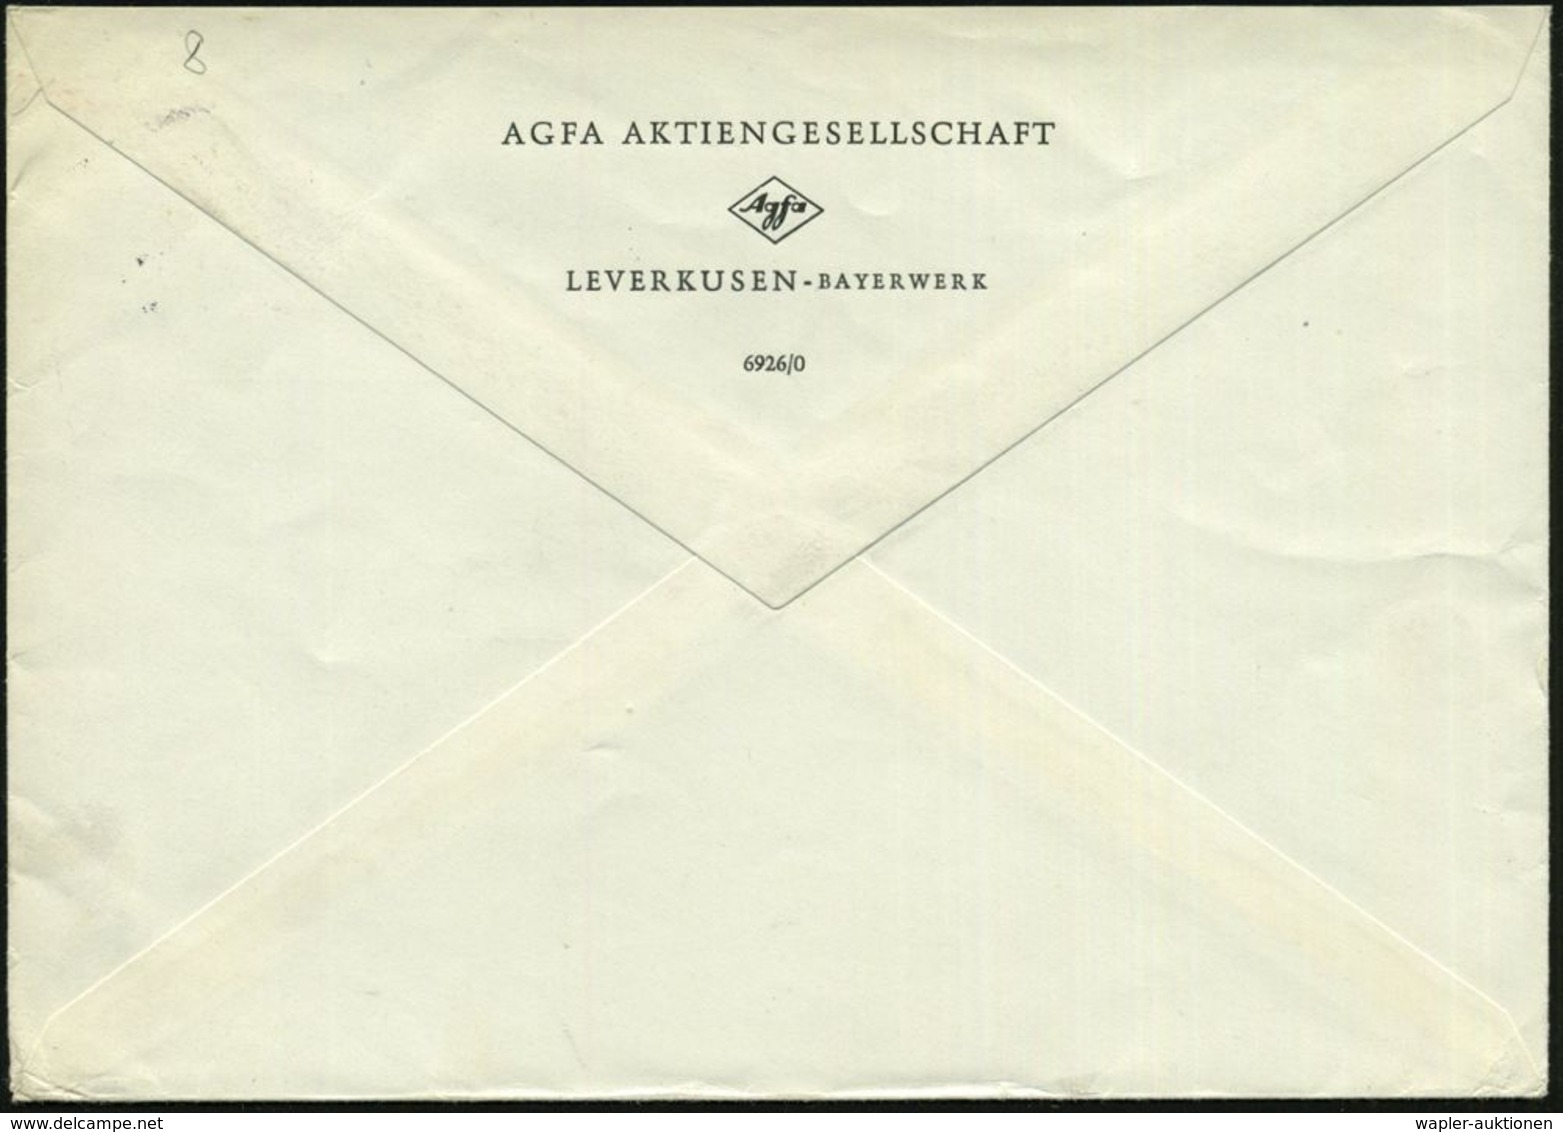 (22c) LEVERKUSEN-BAYERWERK/ M 1961 (7.4.) 2K = Hauspostamt Des Bayer-Werks , Rs. Abs.-Vordr.: AGFA AG, Fern-Bf. An VEB A - Scheikunde